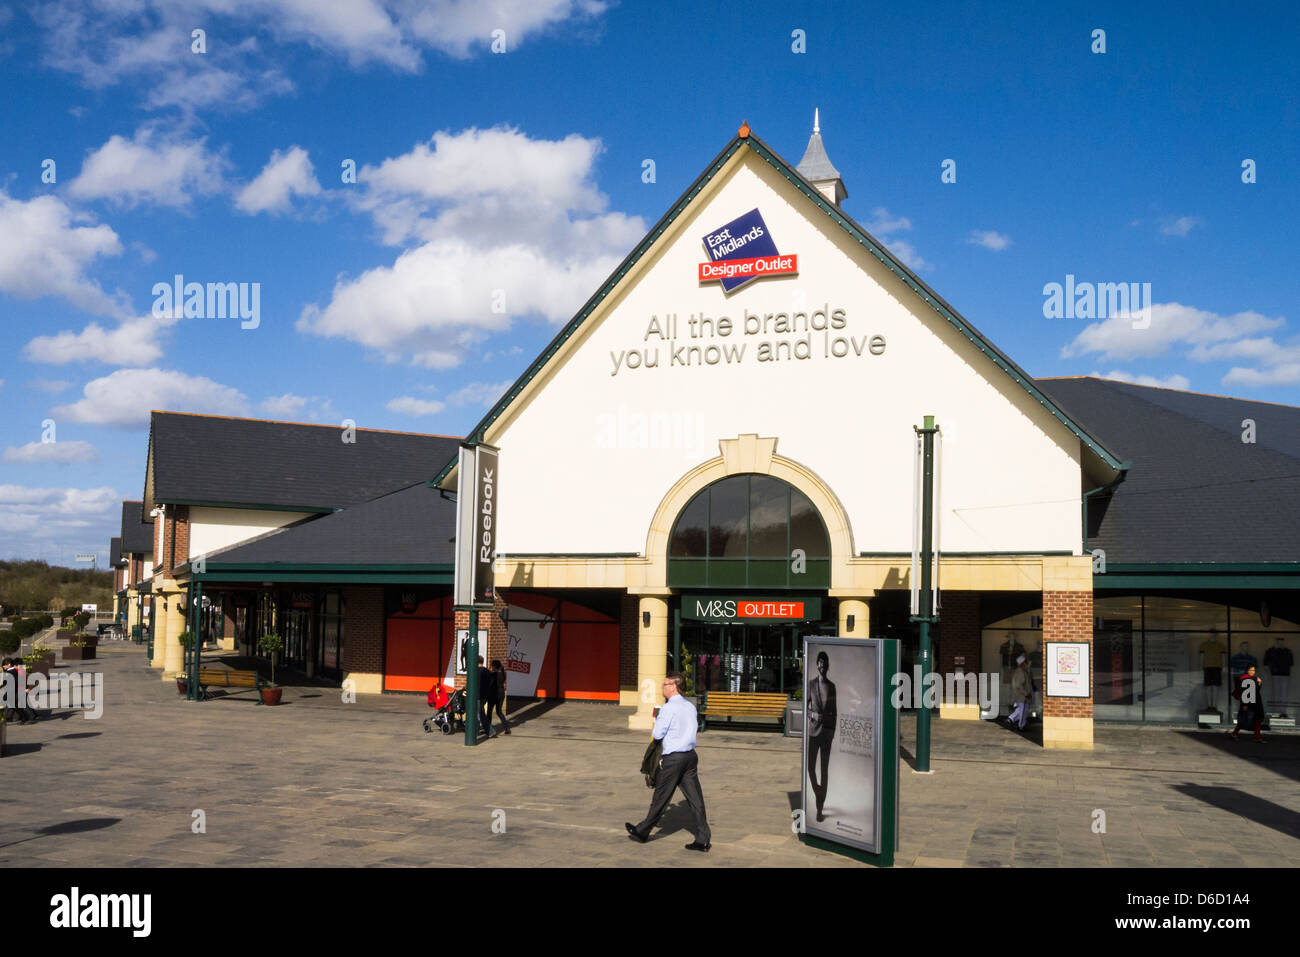 McArthurGlen East Midlands Designer Outlet shopping centre, Derbyshire  Stock Photo - Alamy